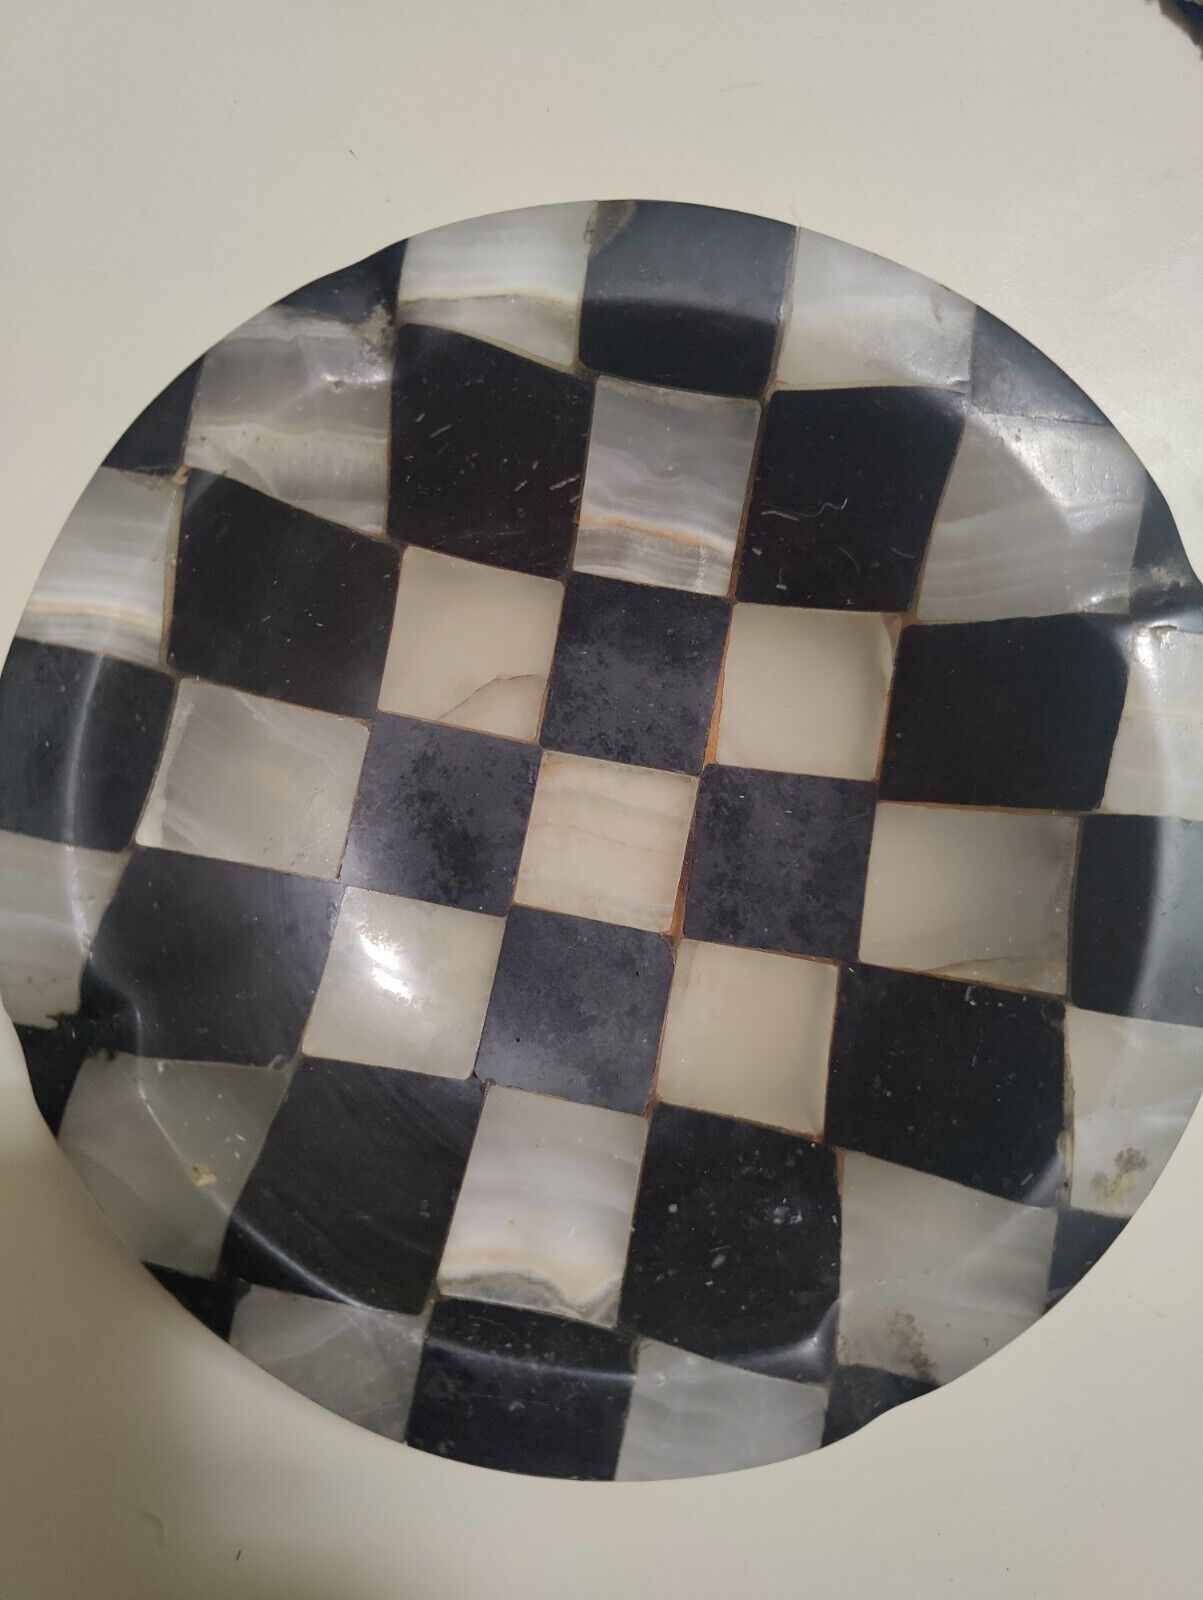 VNTG Onyx Ashtray-Black/White Checkered Pattern Alchemy Works-Heavy-High Quality